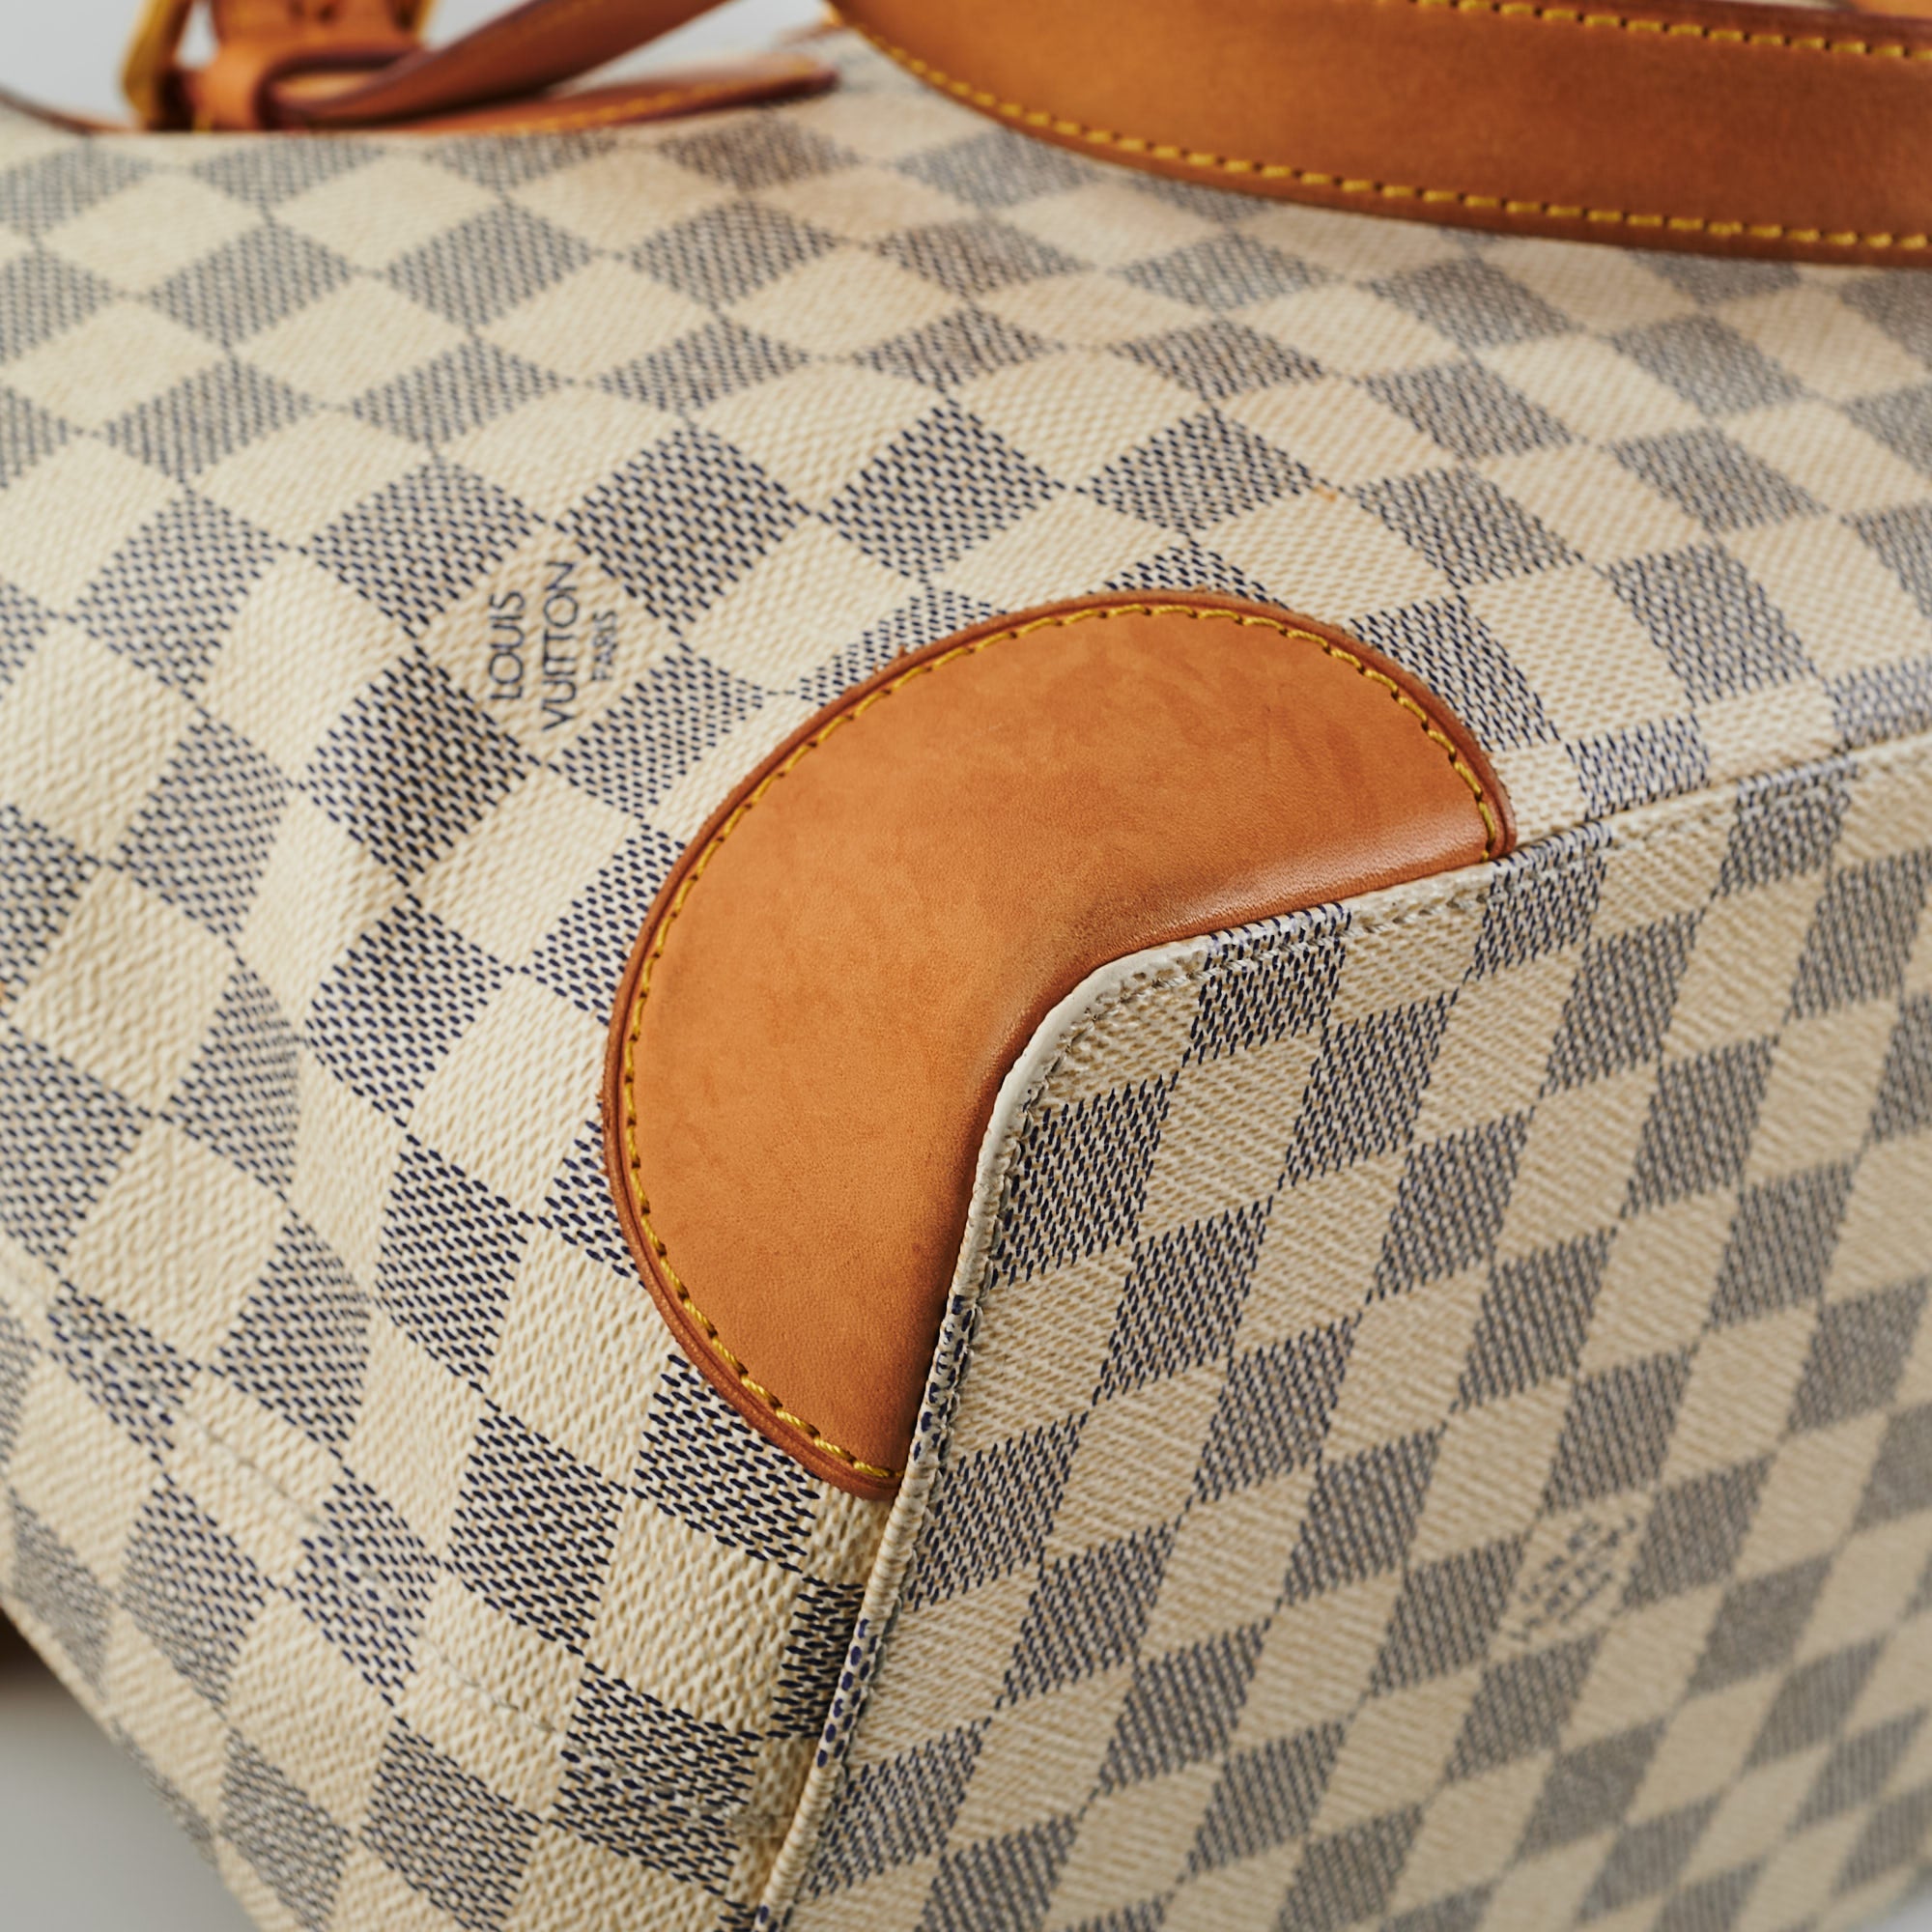 Authentic Louis Vuitton Hampstead PM Azur Damier Tote Handbag Bag CR0151  Spain